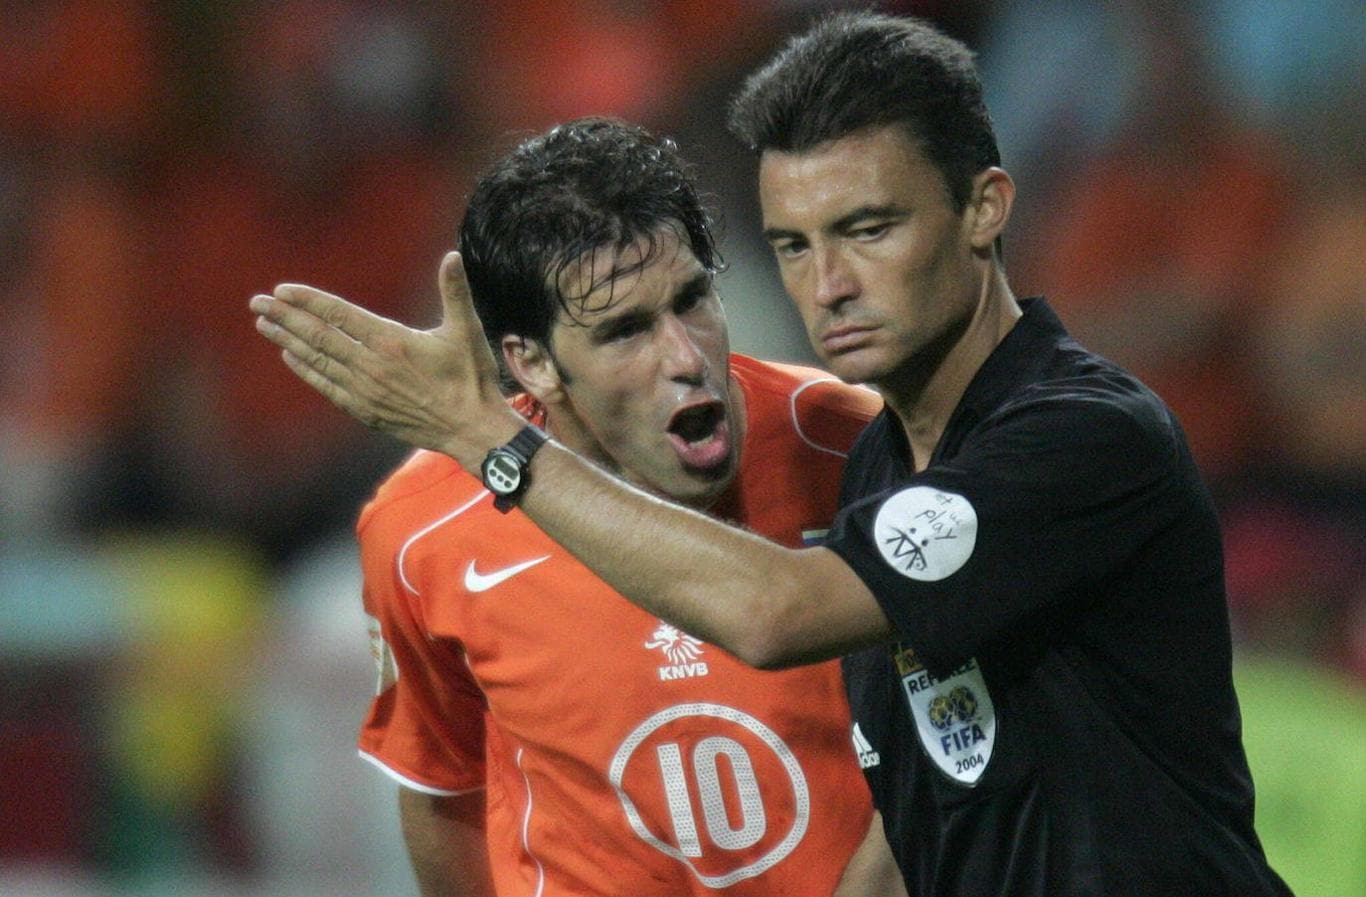 El árbitro asturiano Manuel Enrique Mejuto González escucha las increpaciones del delantero Van Nistelrroy durante el partido entre Holanda y la república Checa en la Eurocopa de Portugal en 2004.